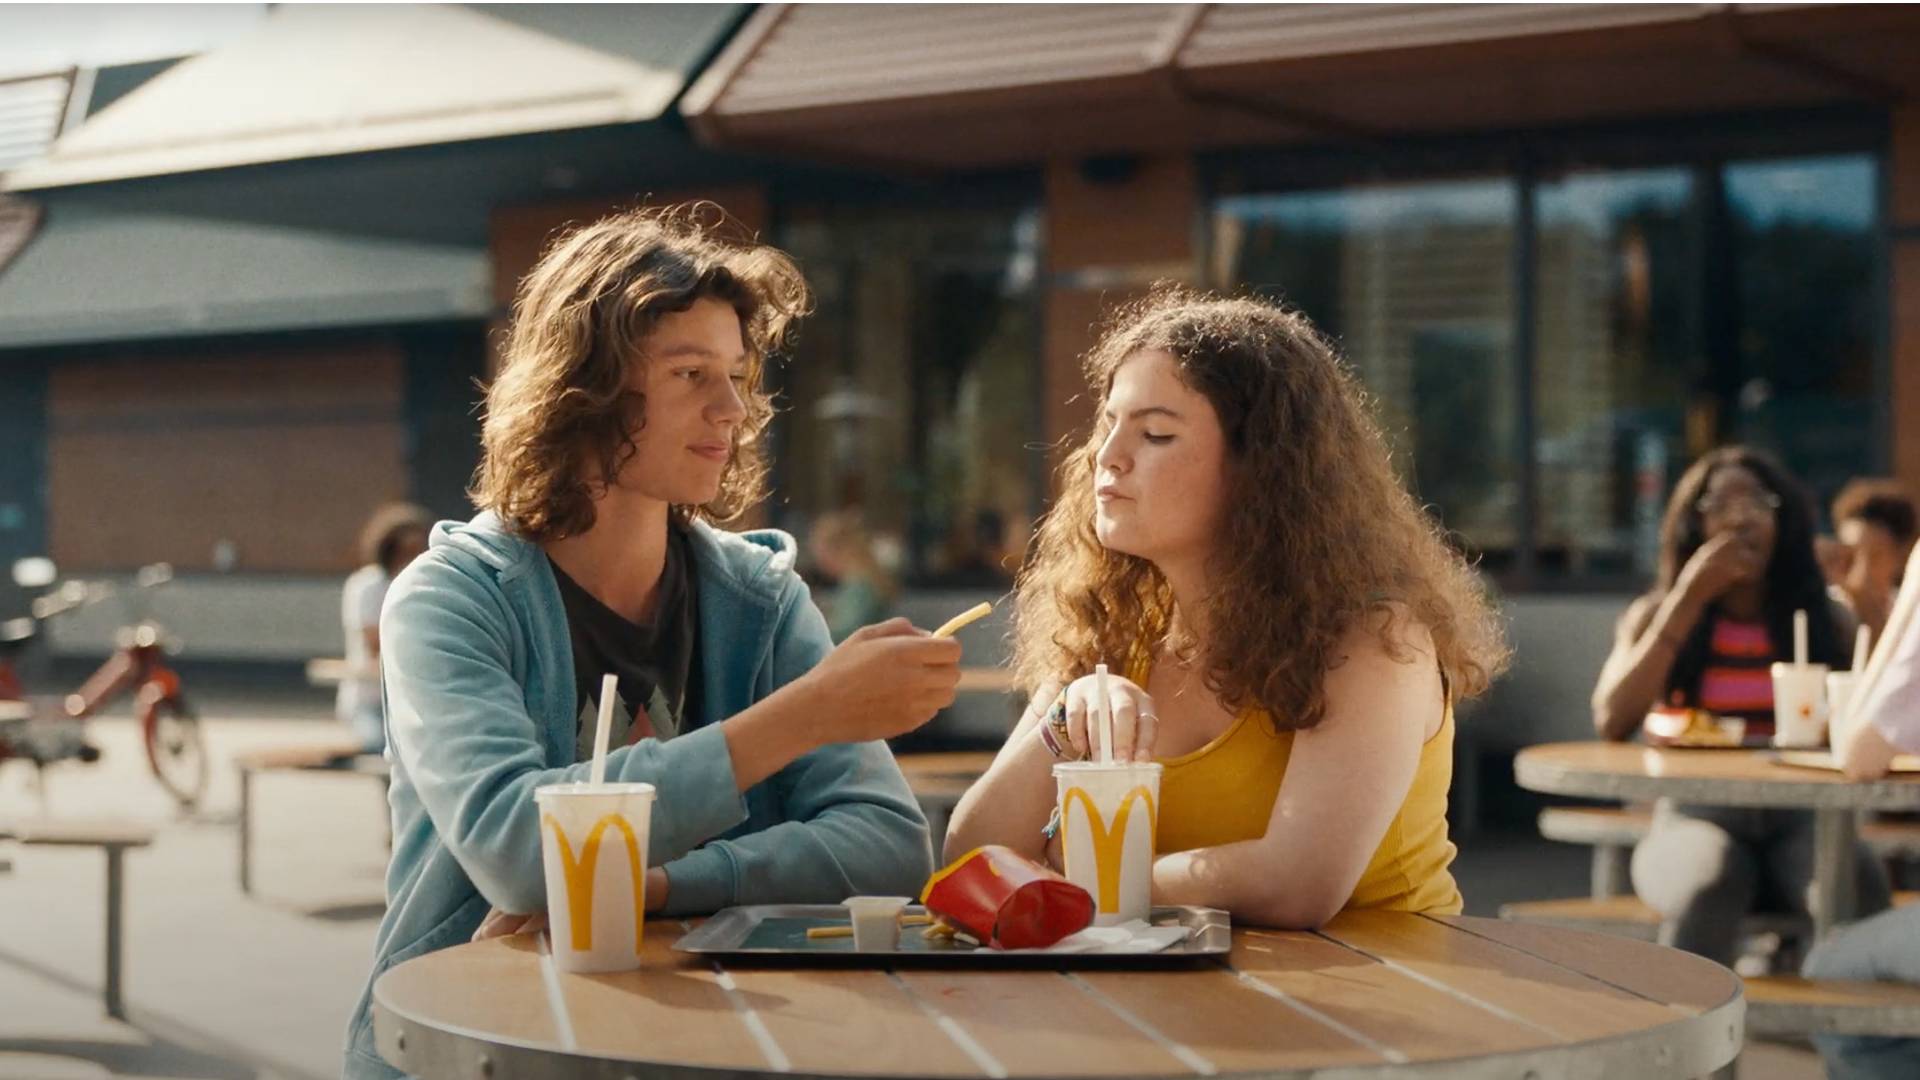 El chico le ofrece una patata frita a la chica en el McDonald's